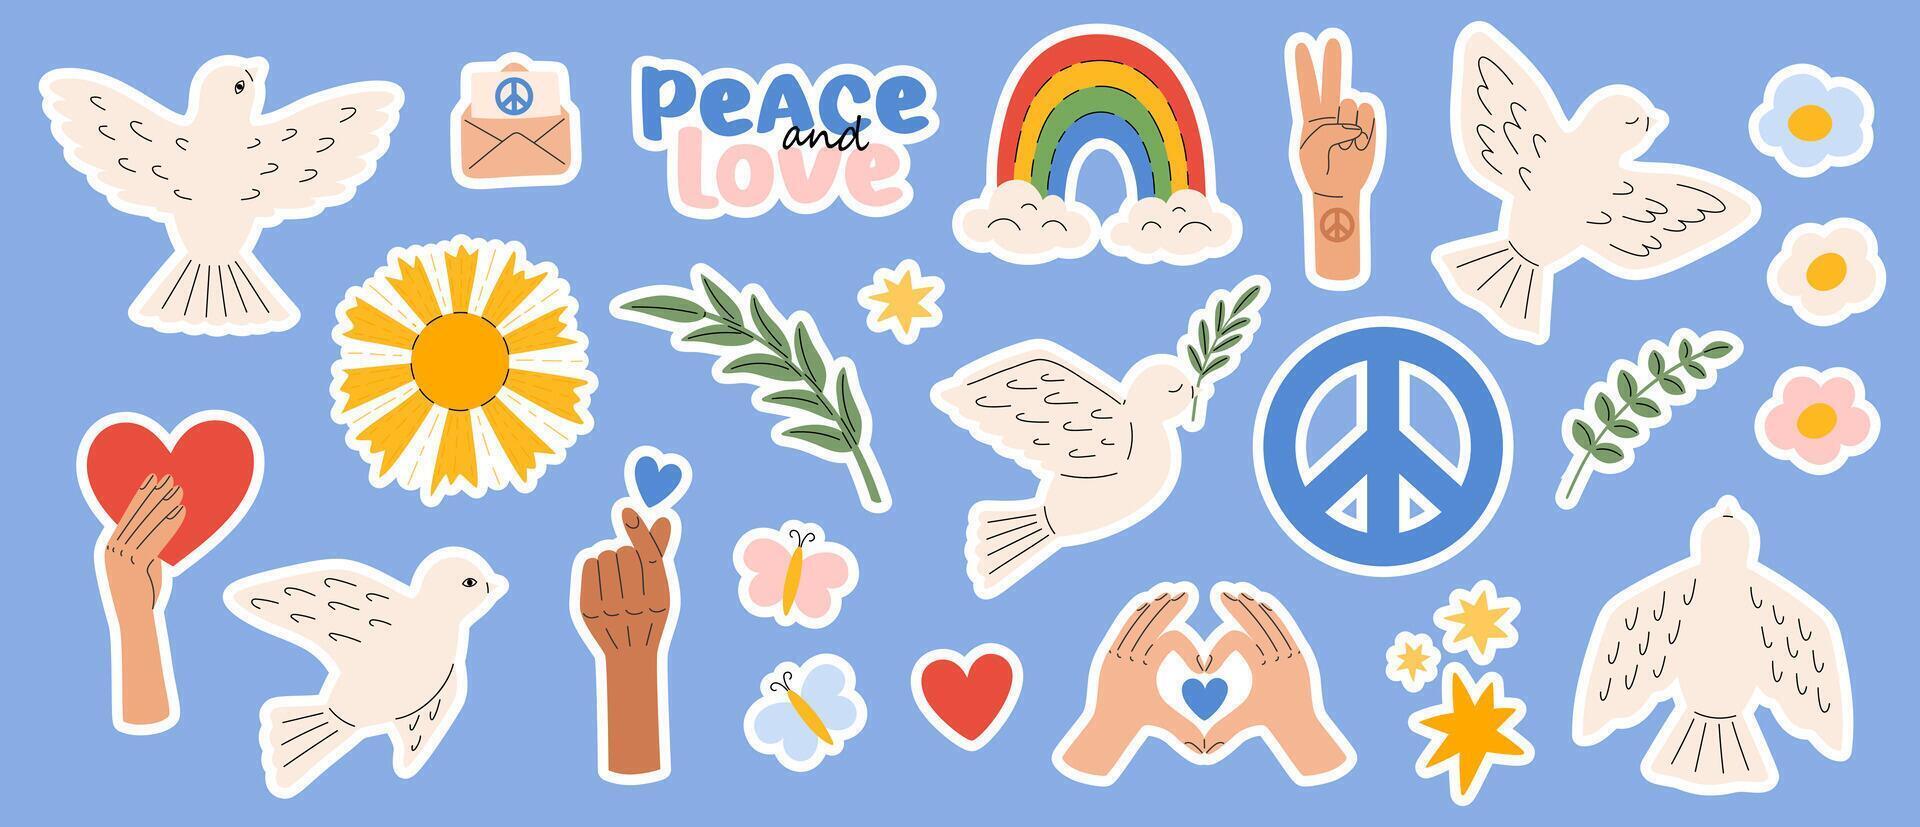 pace e amore, libertà, no guerra etichetta pacchetto. colomba uccello, arcobaleno, cuore, braccia. internazionale giorno di pace. pacifismo e hippie simboli. vettore illustrazione nel piatto mano disegnato stile